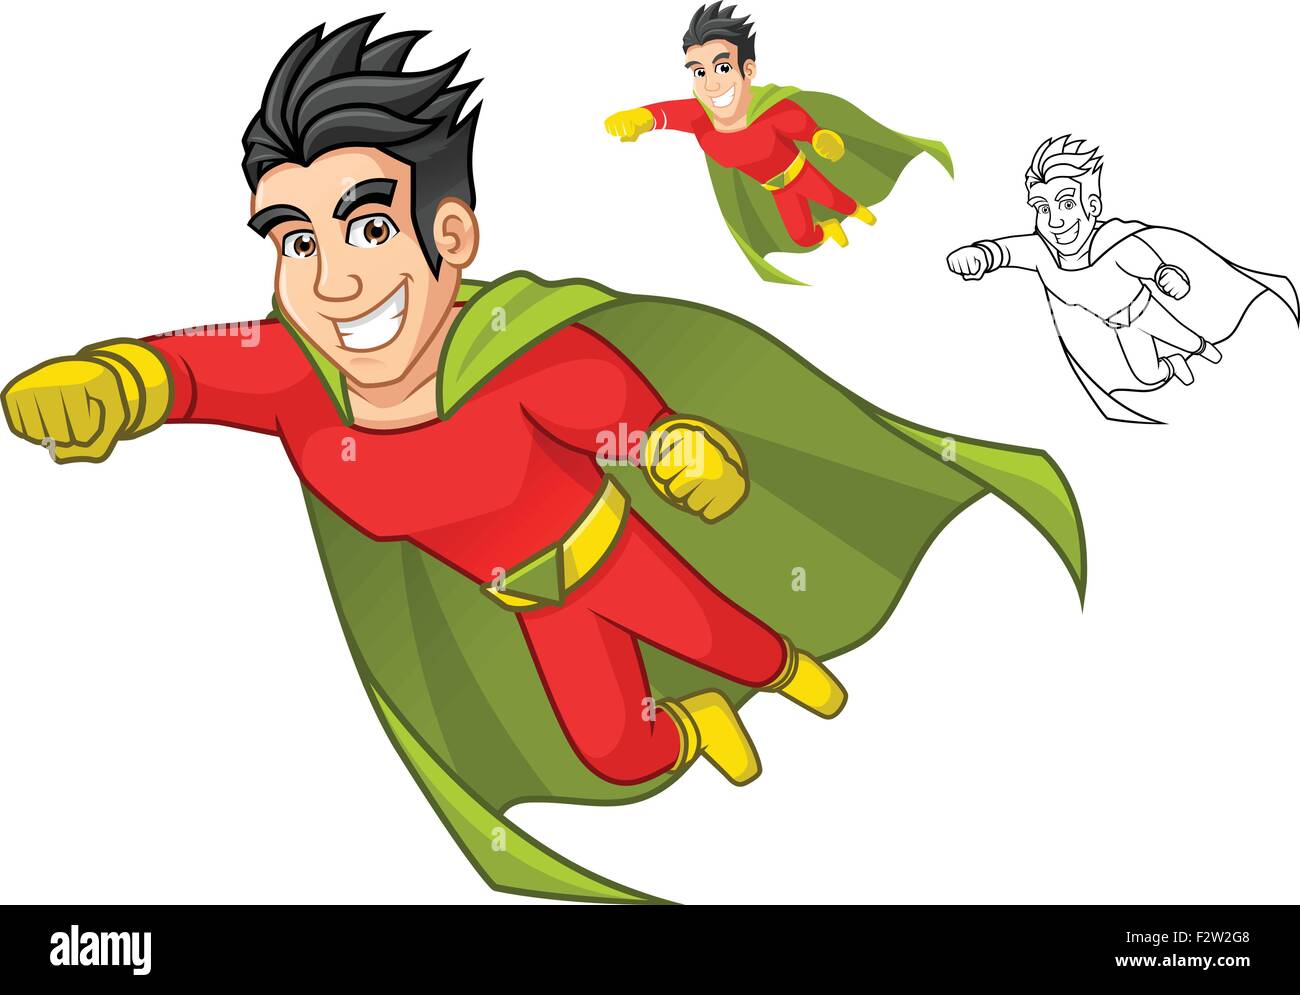 Coole Superhelden Comic Figur Mit Umhang Und Fliegende Pose Stock Vektorgrafik Alamy